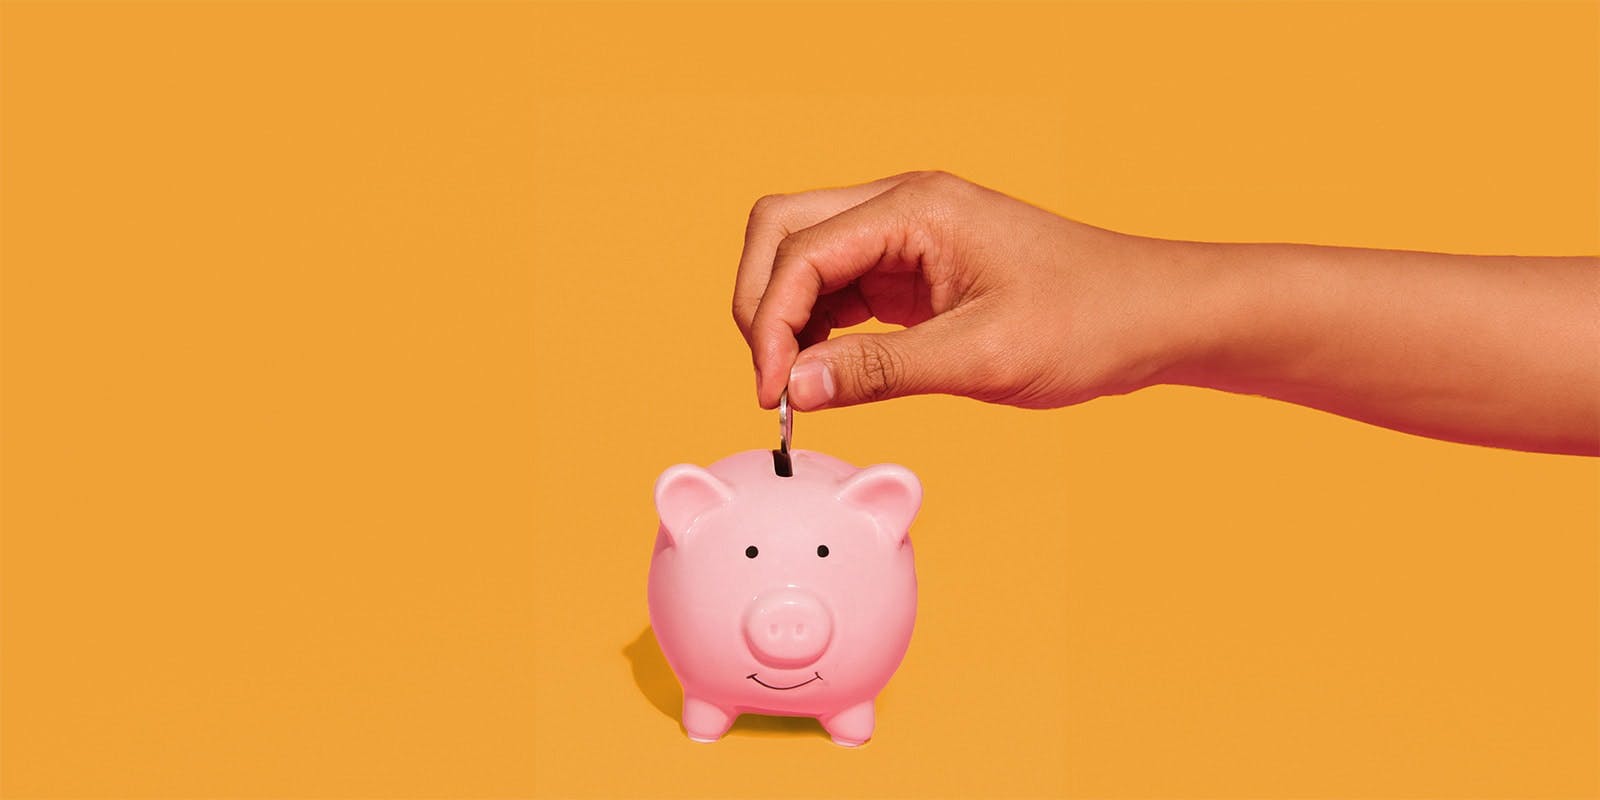 A hand putting a coin into a pink piggy bank